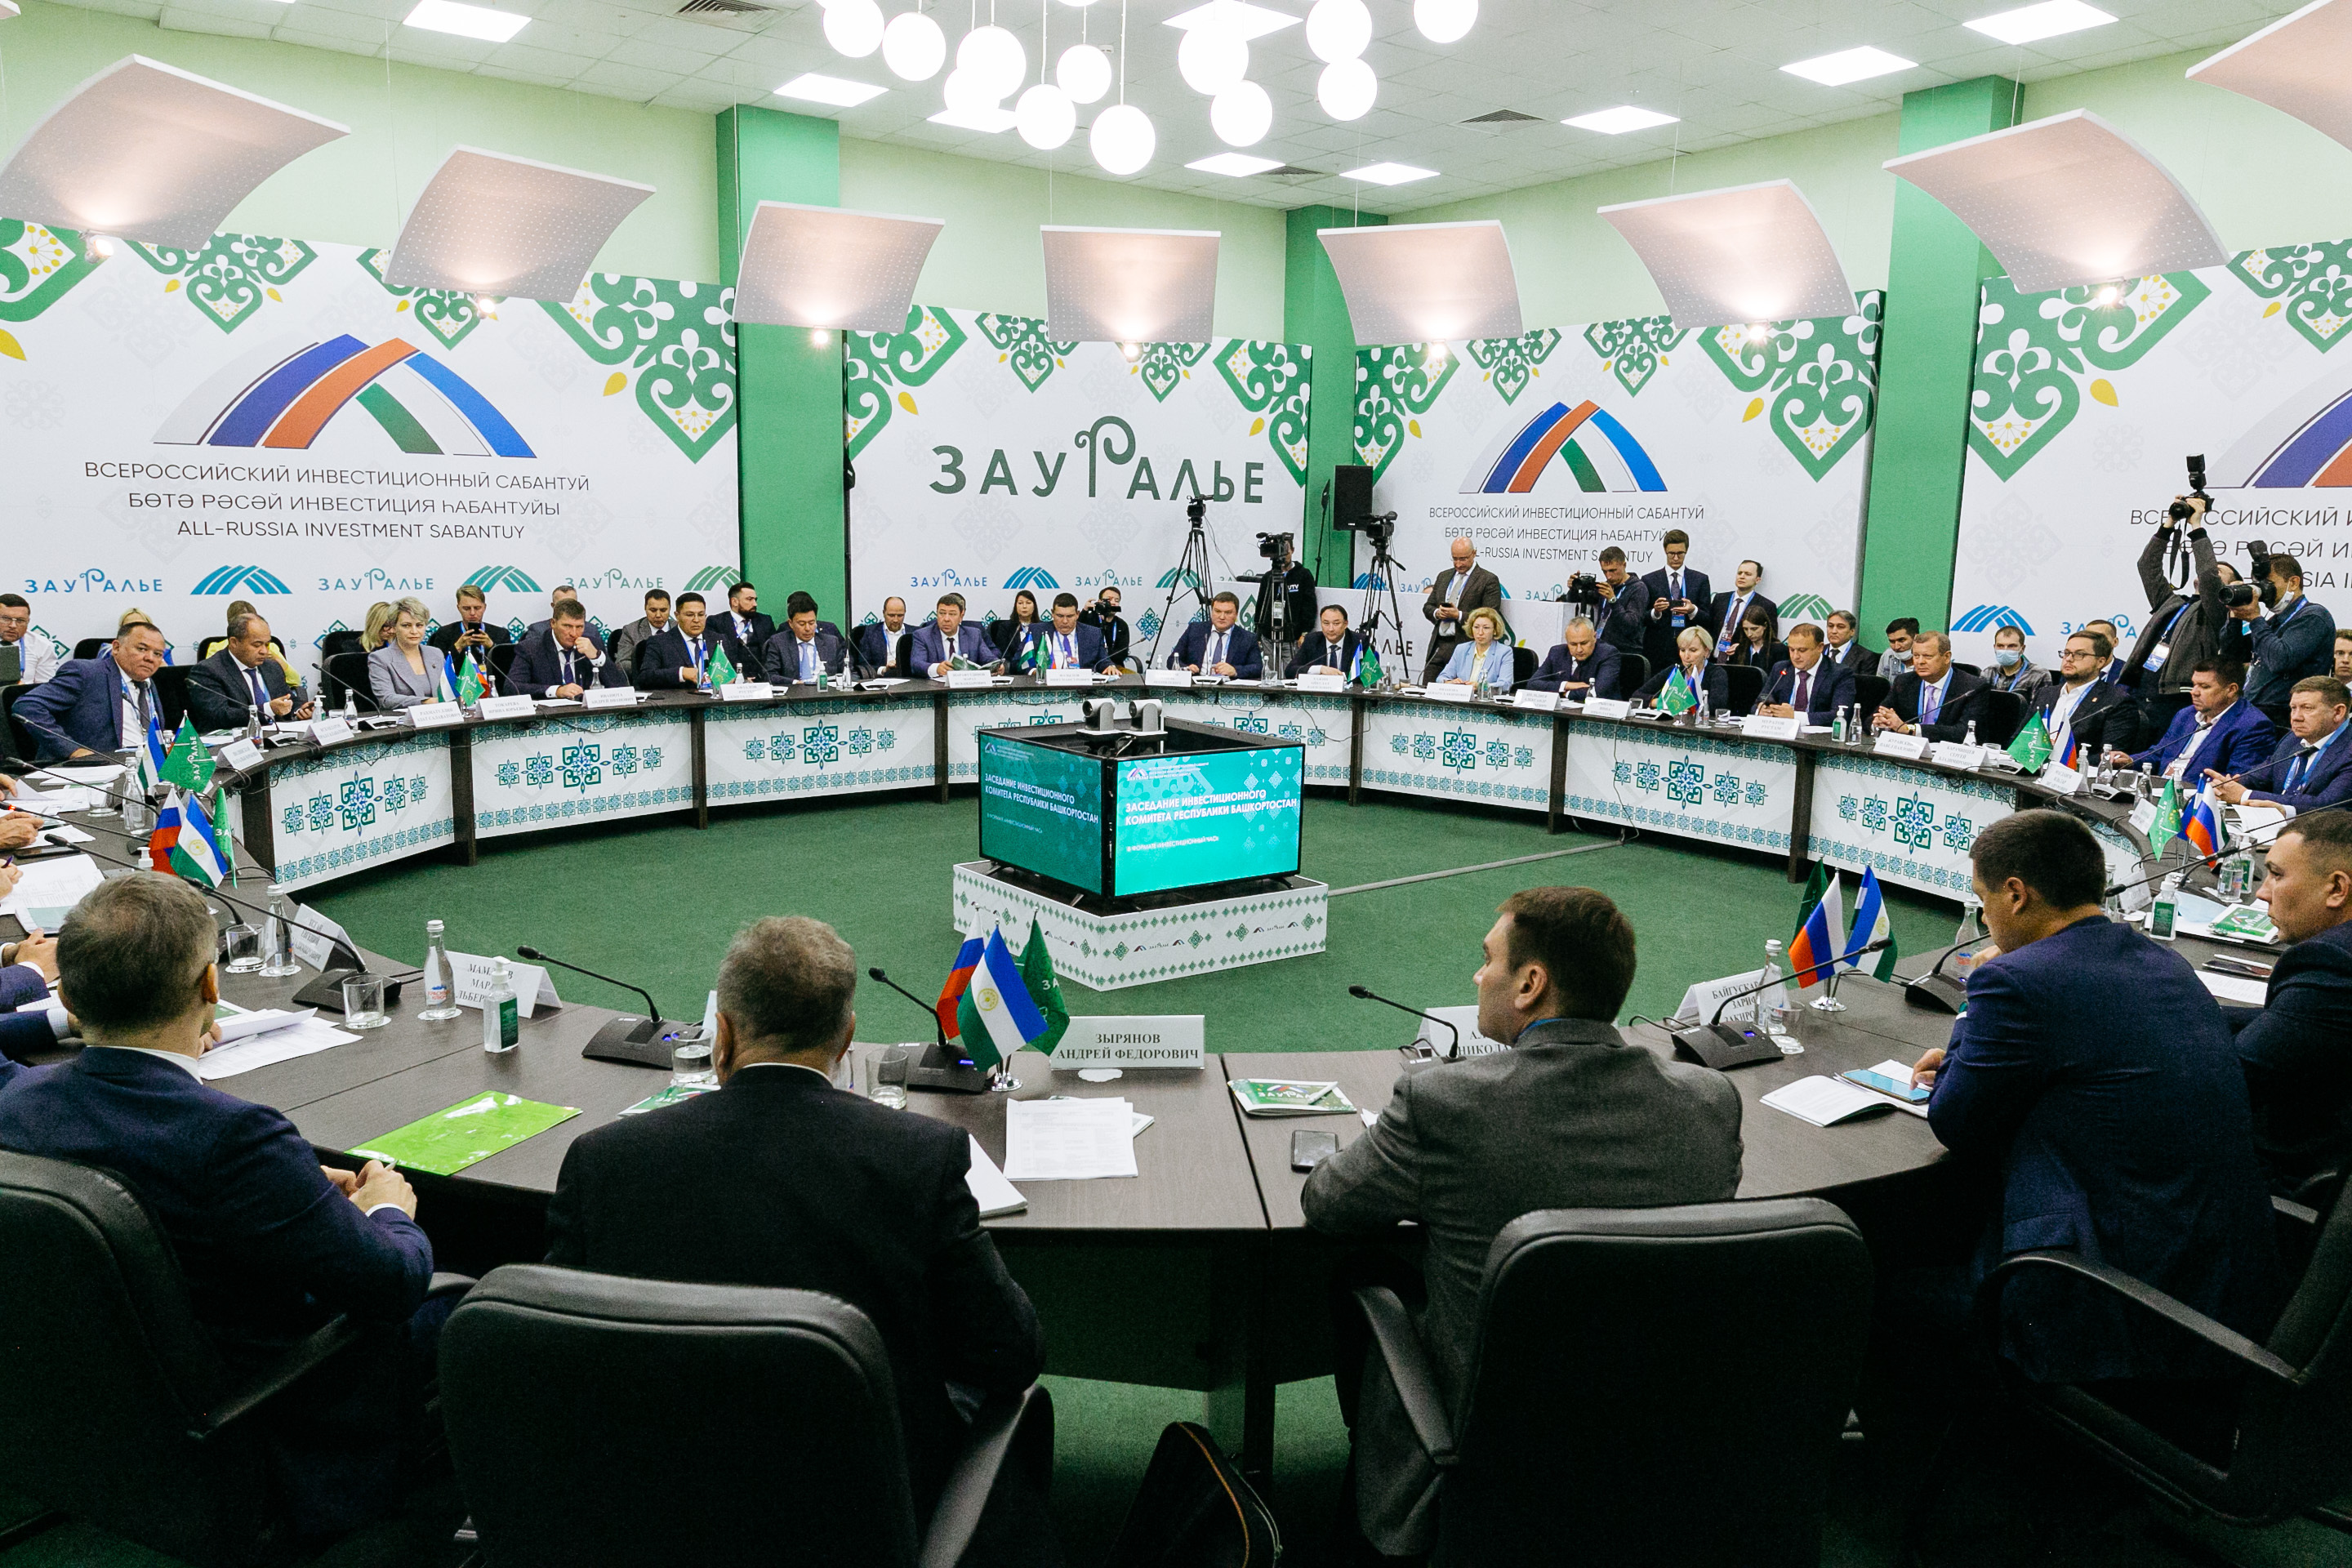 «Территорию Зауралья необходимо развивать», - сказал Глава Республики Башкортостан Радий Хабиров на Всероссийском Инвестсабантуе «Зауралье-2021»